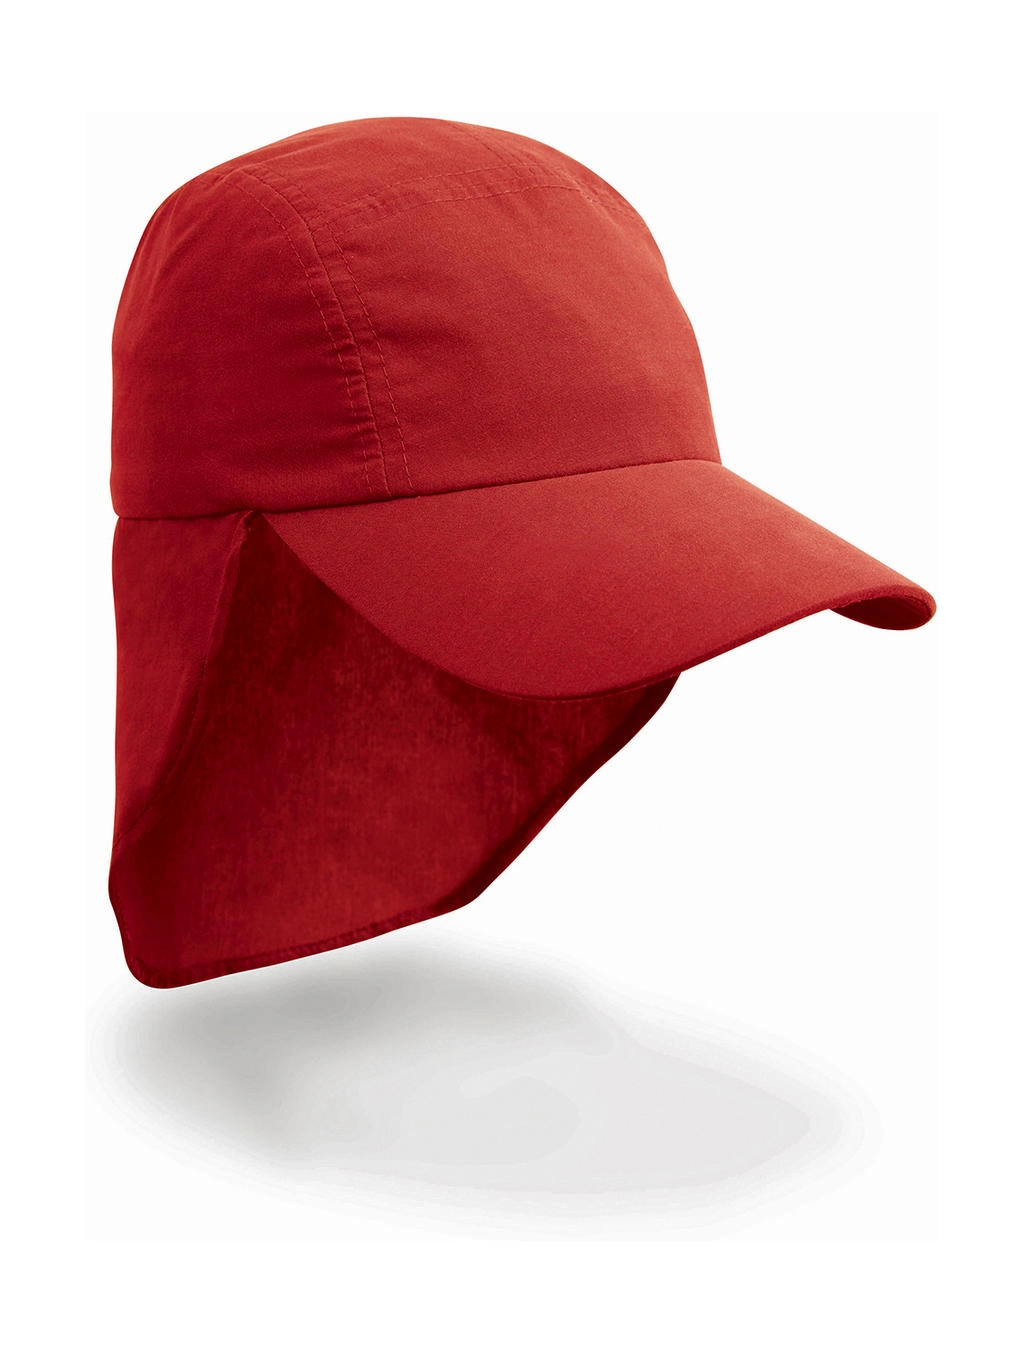 Junior Ulti Legionnaire Cap zum Besticken und Bedrucken in der Farbe Red mit Ihren Logo, Schriftzug oder Motiv.